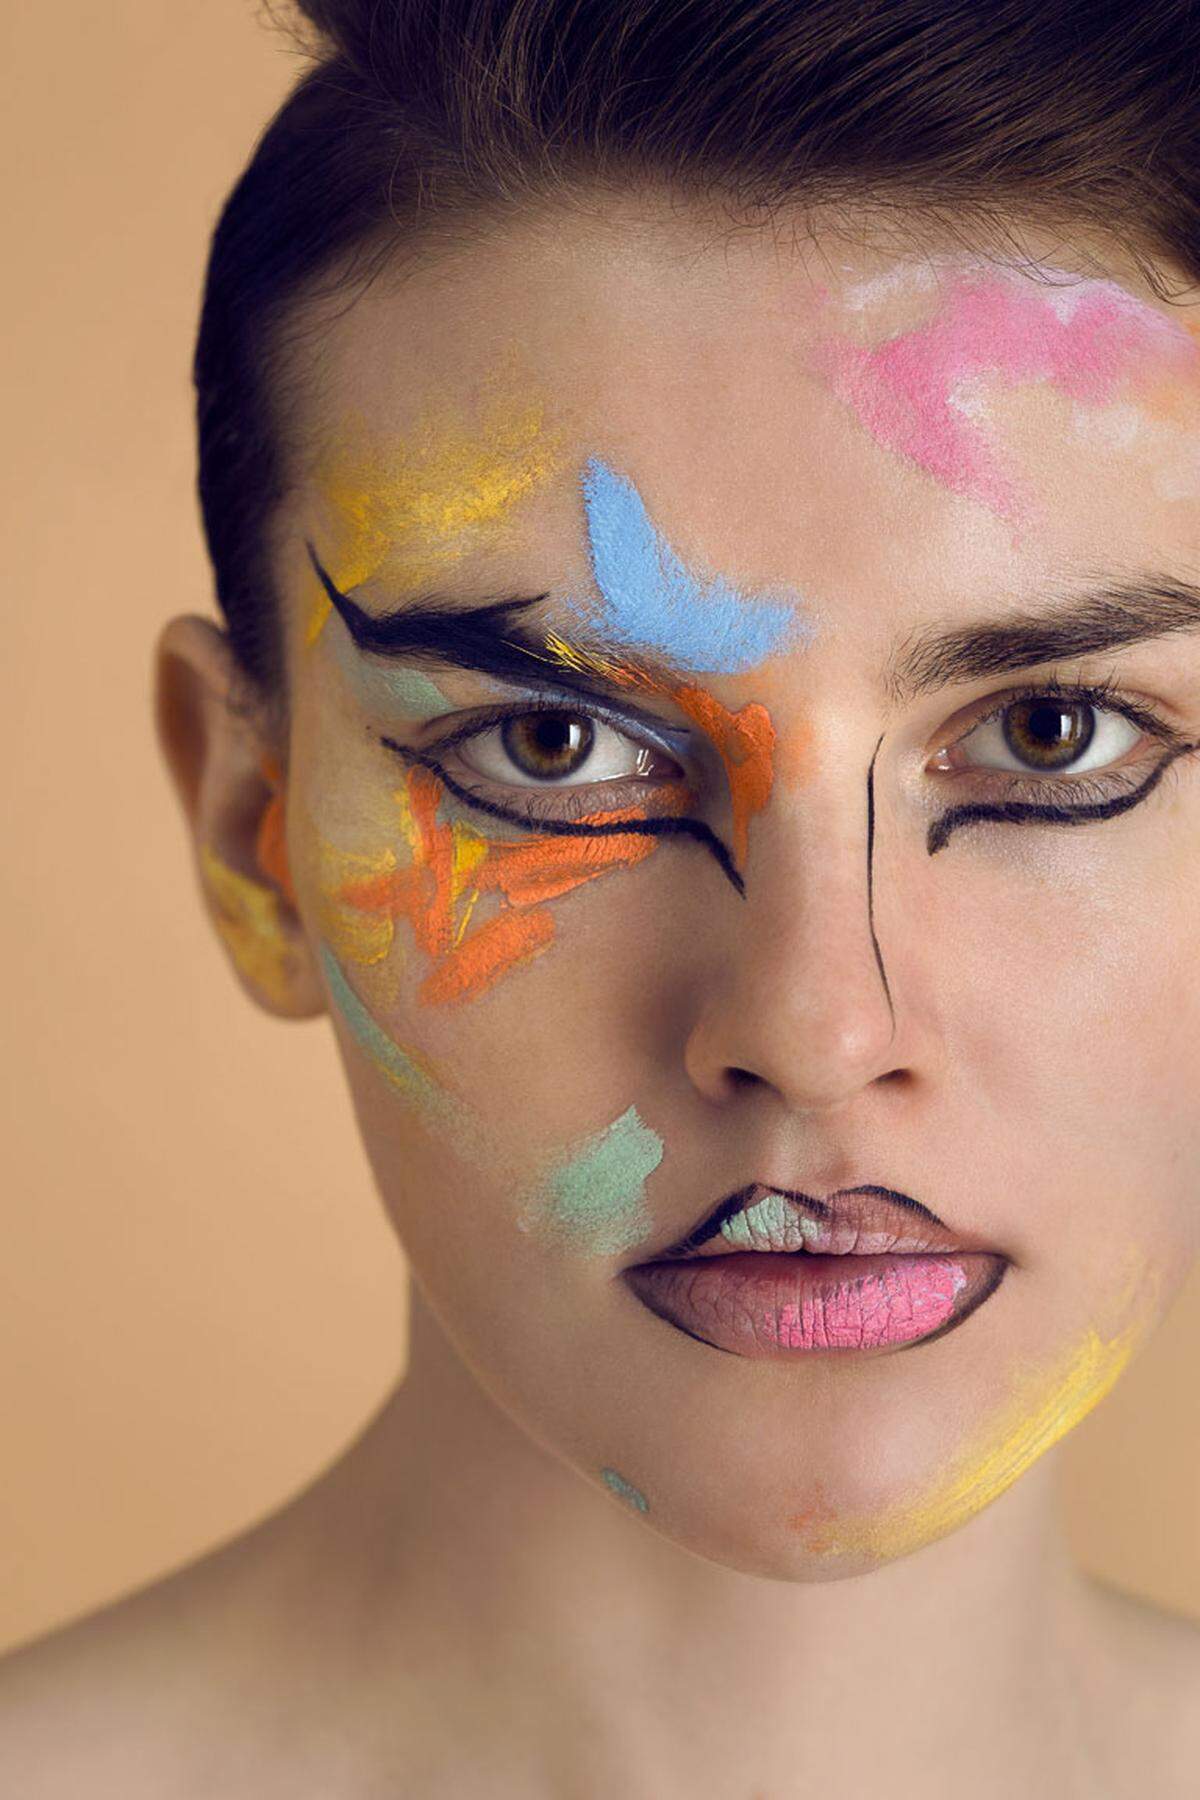 Inspiriert von Henri Matisse wurde das Gesicht des Models mit Korrekturfarben bemalt. Diese werden normalerweise verwendet, um die Farben der Haut auszugleichen. Violett gegen gelbe Flecken, Orange gegen Augenringe und Grün gegen Rötungen.